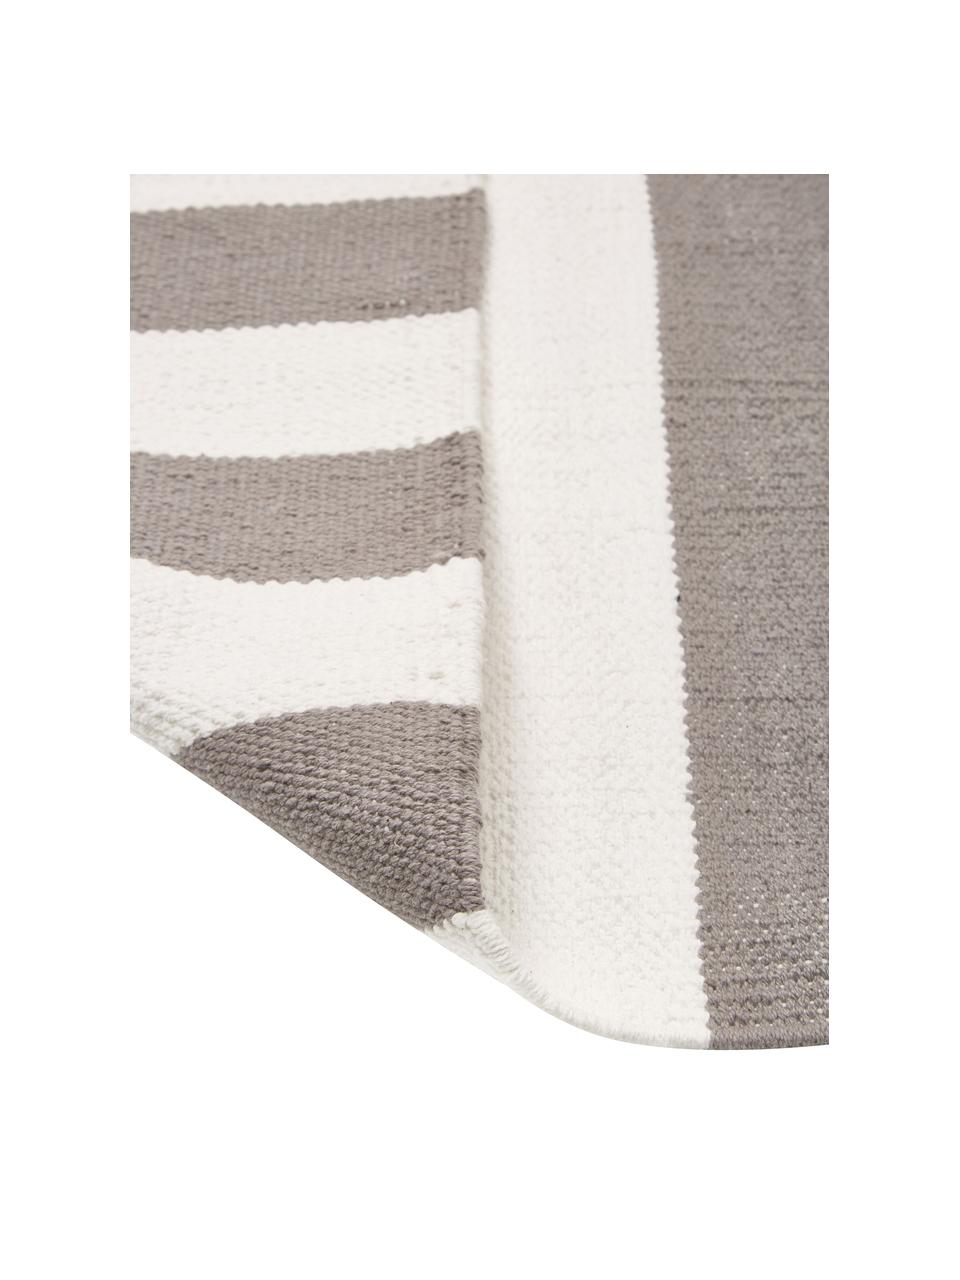 Gestreifter Baumwollteppich Blocker in Grau/Weiß, handgewebt, 100% Baumwolle, Cremeweiß/Hellgrau, B 160 x L 230 cm (Größe M)